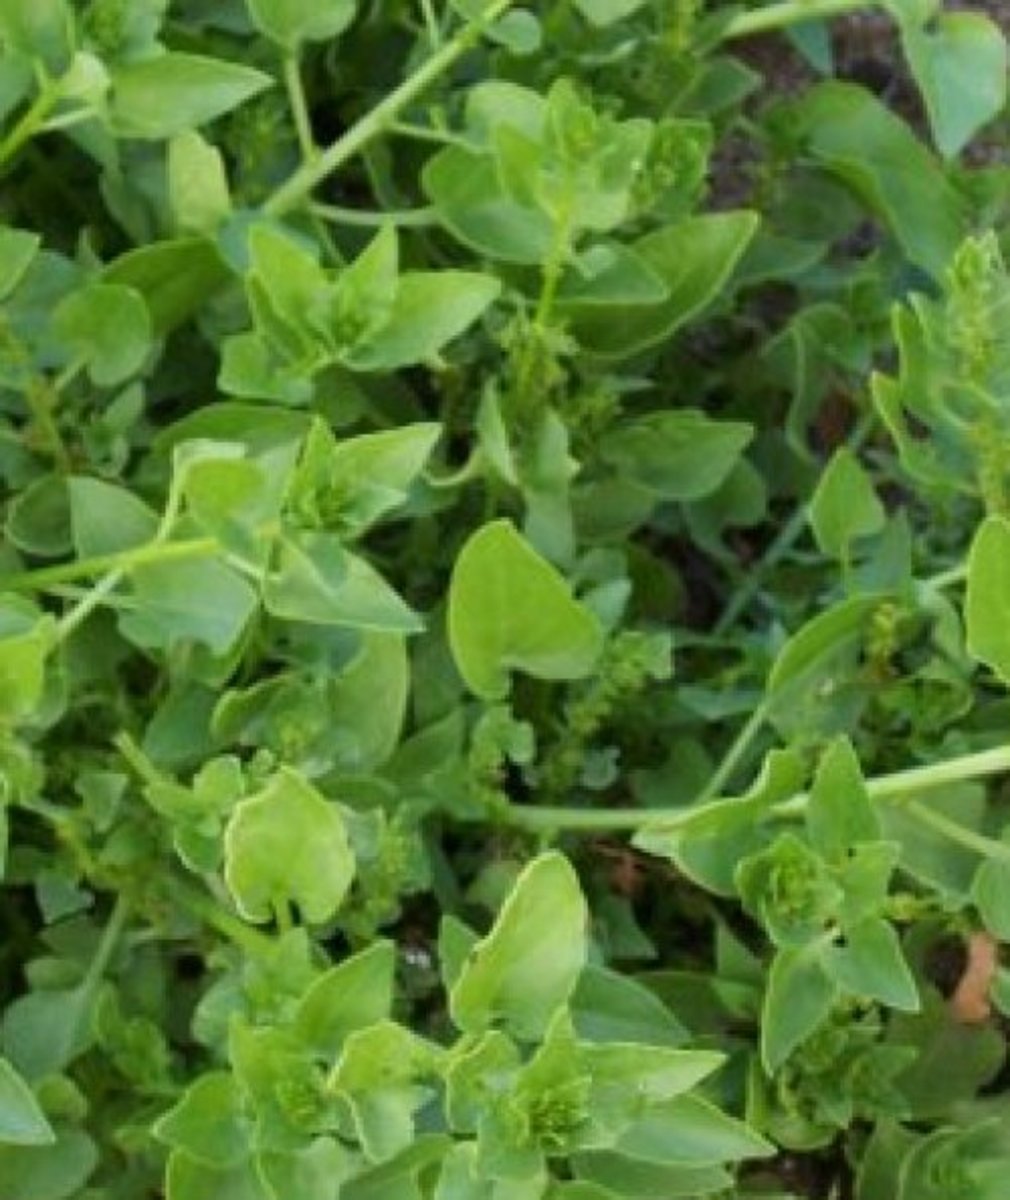 Wild spinach